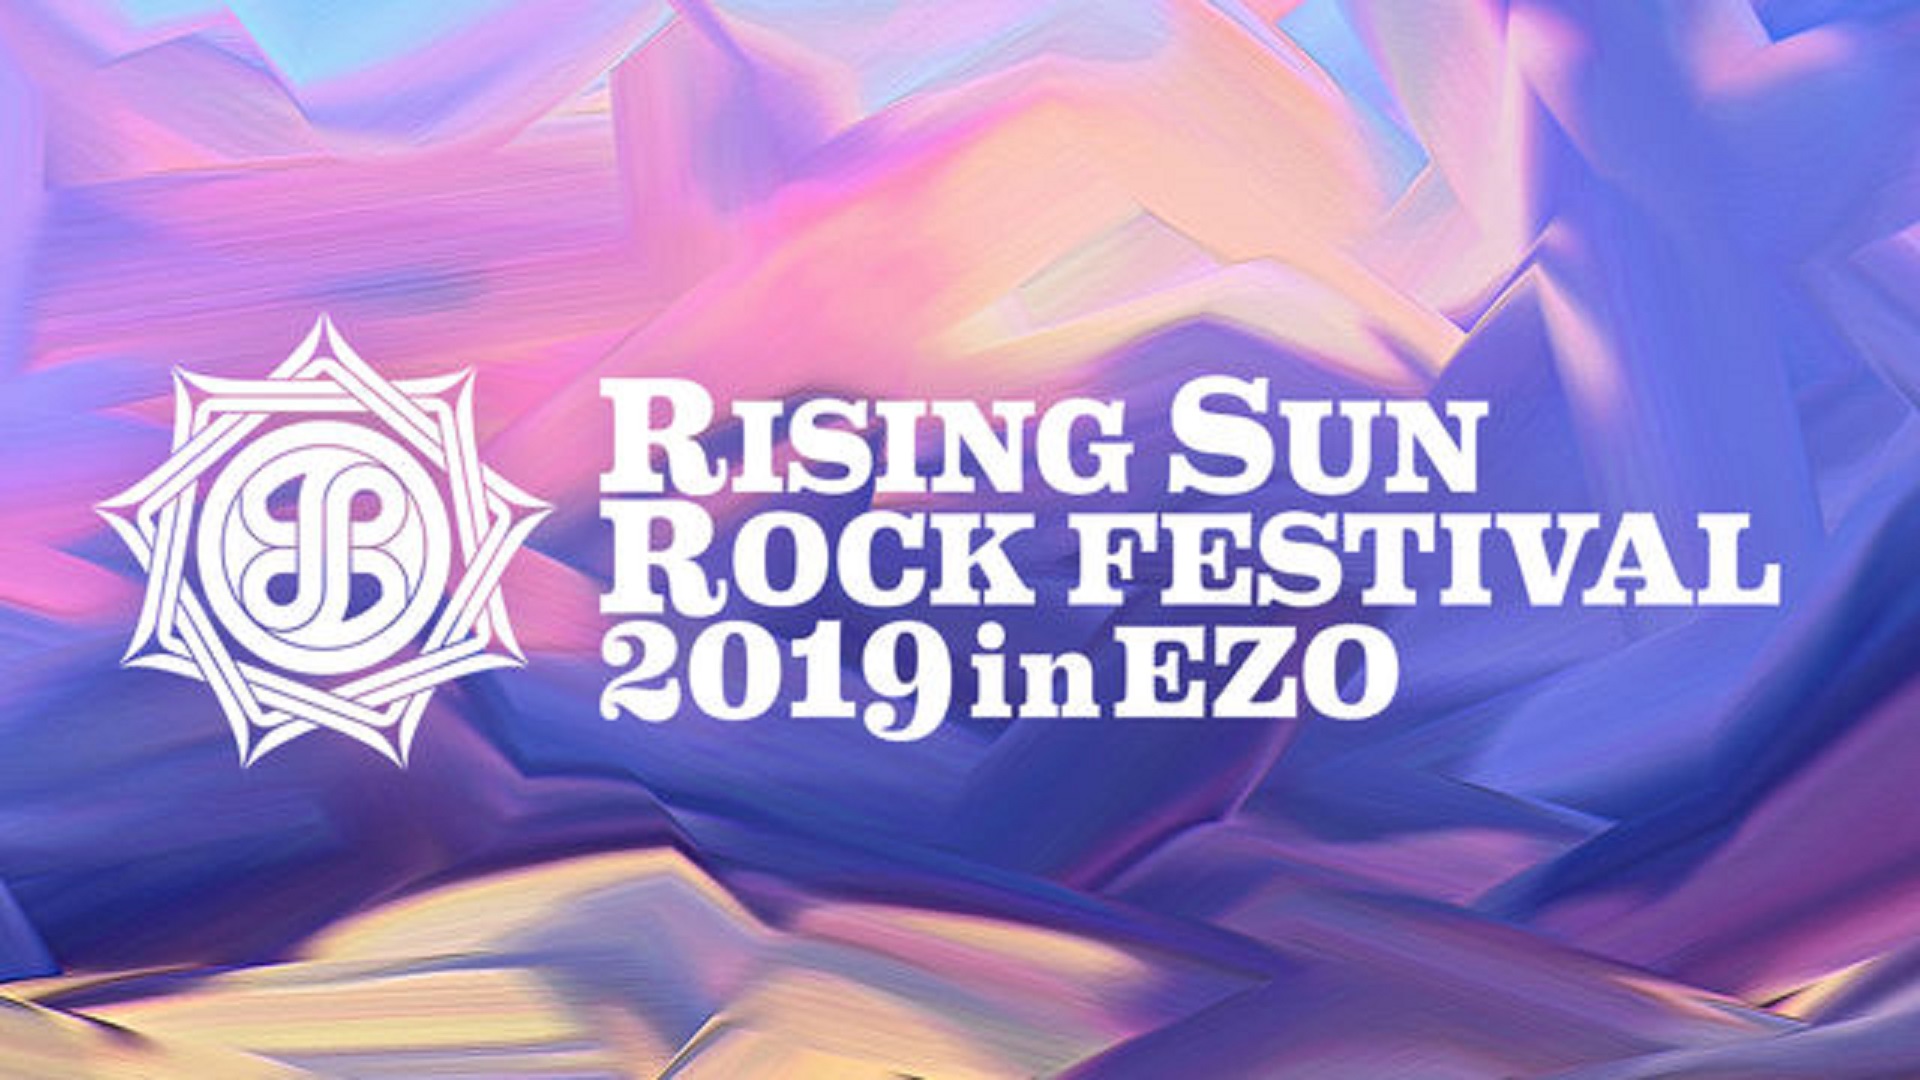 Rising Sun Rock Festival 19 In Ezo Gyao での無料配信アーティストが決定 株式会社gyaoのプレスリリース